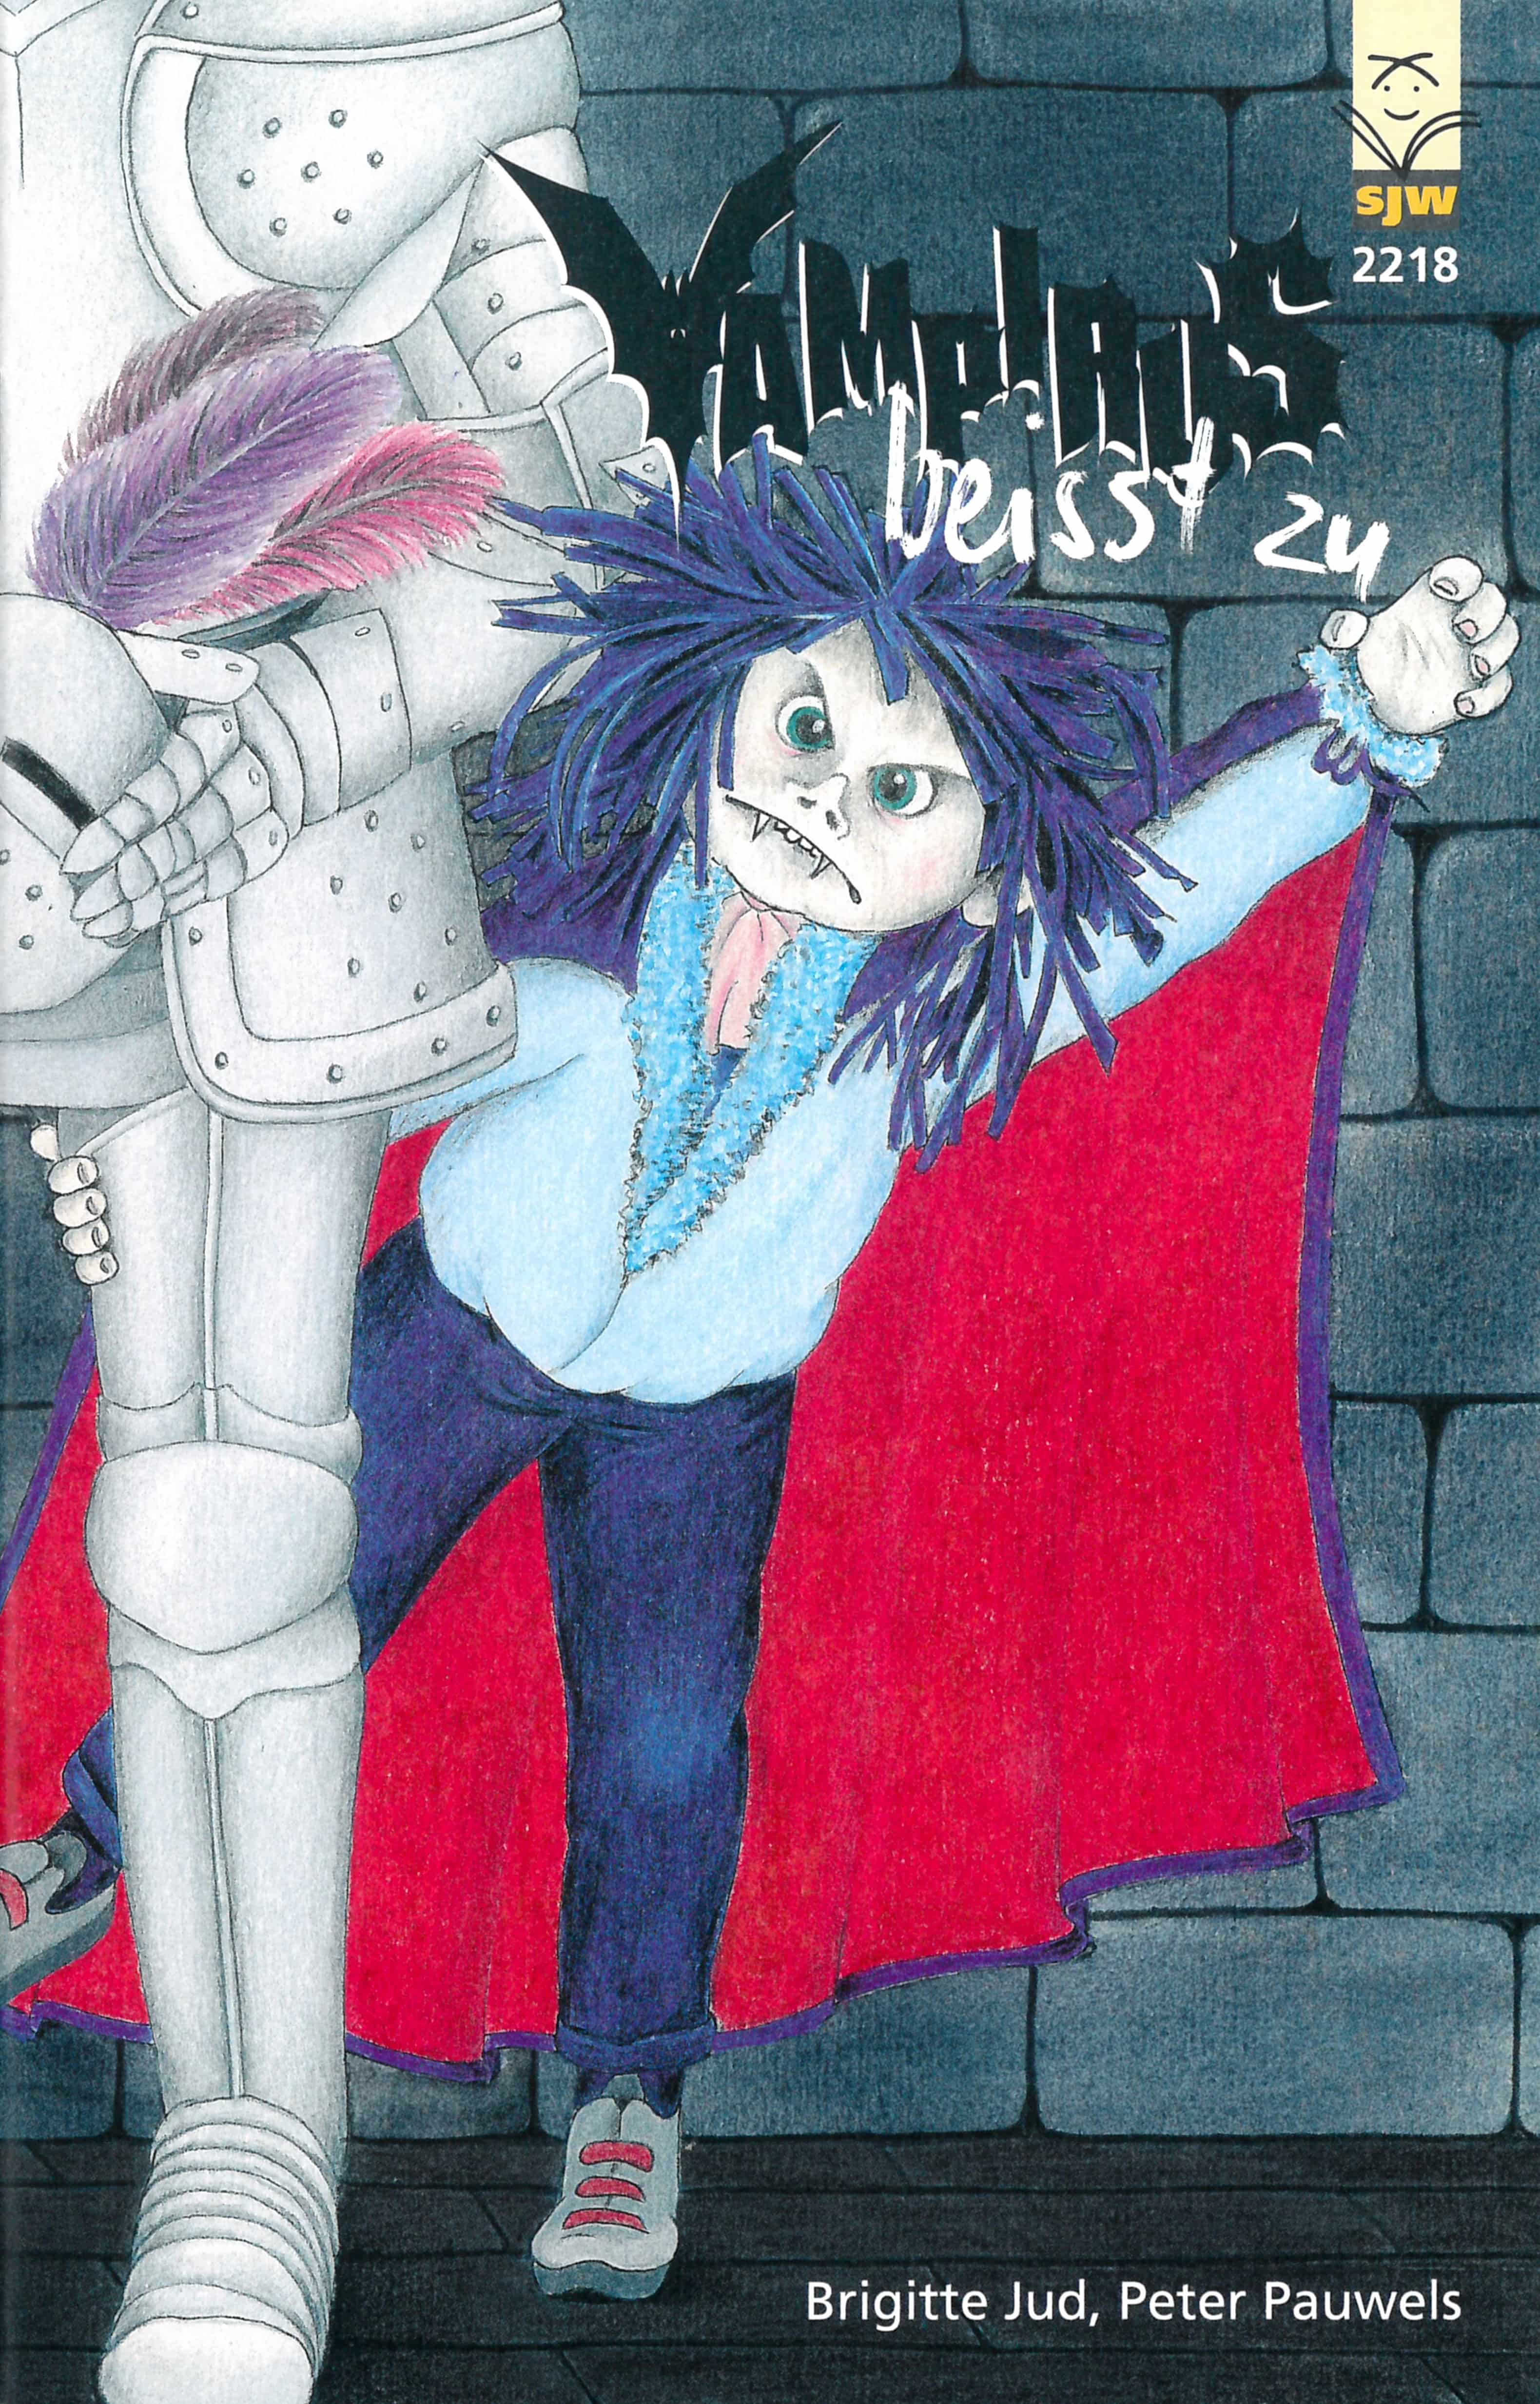 Vampirus beisst zu, ein Kinderbuch von Brigitte Jud, Illustration von Peter Pauwels, SJW Verlag, Fantasy